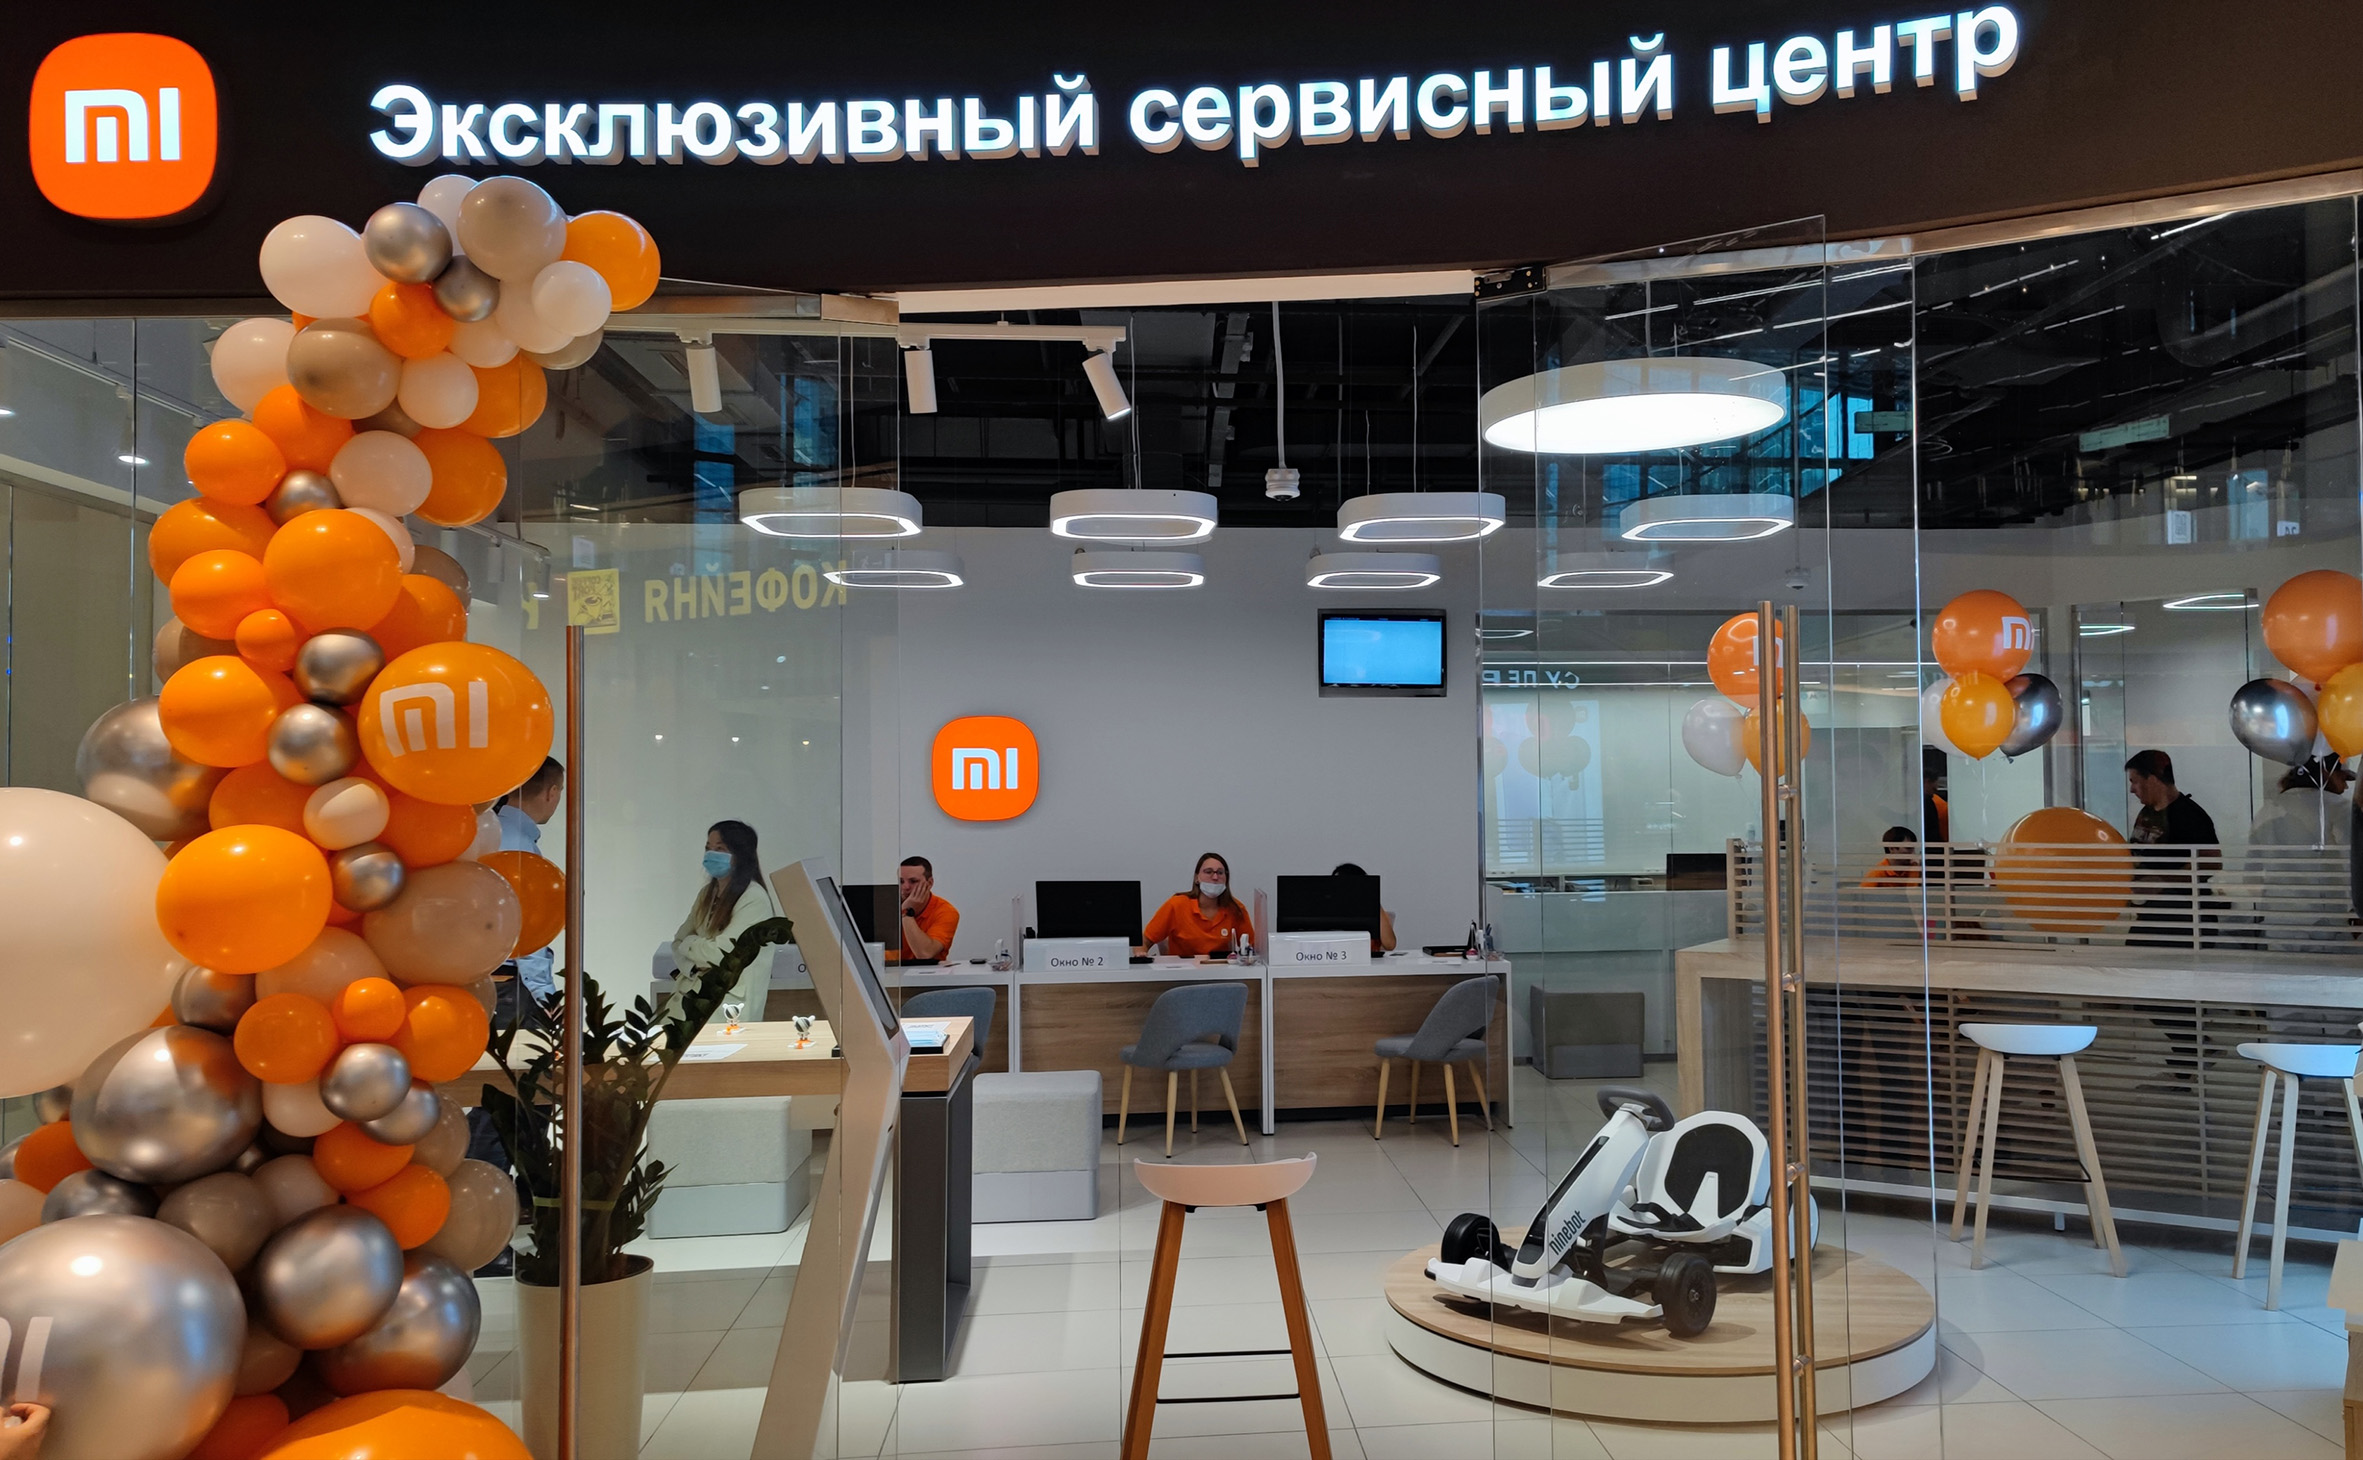 Телефон сервисного центра сяоми. Сервисный центр Ксиаоми. Сервисный центр Xiaomi. Сяоми сервис центр. Сервисный центр Сяоми в Москве.